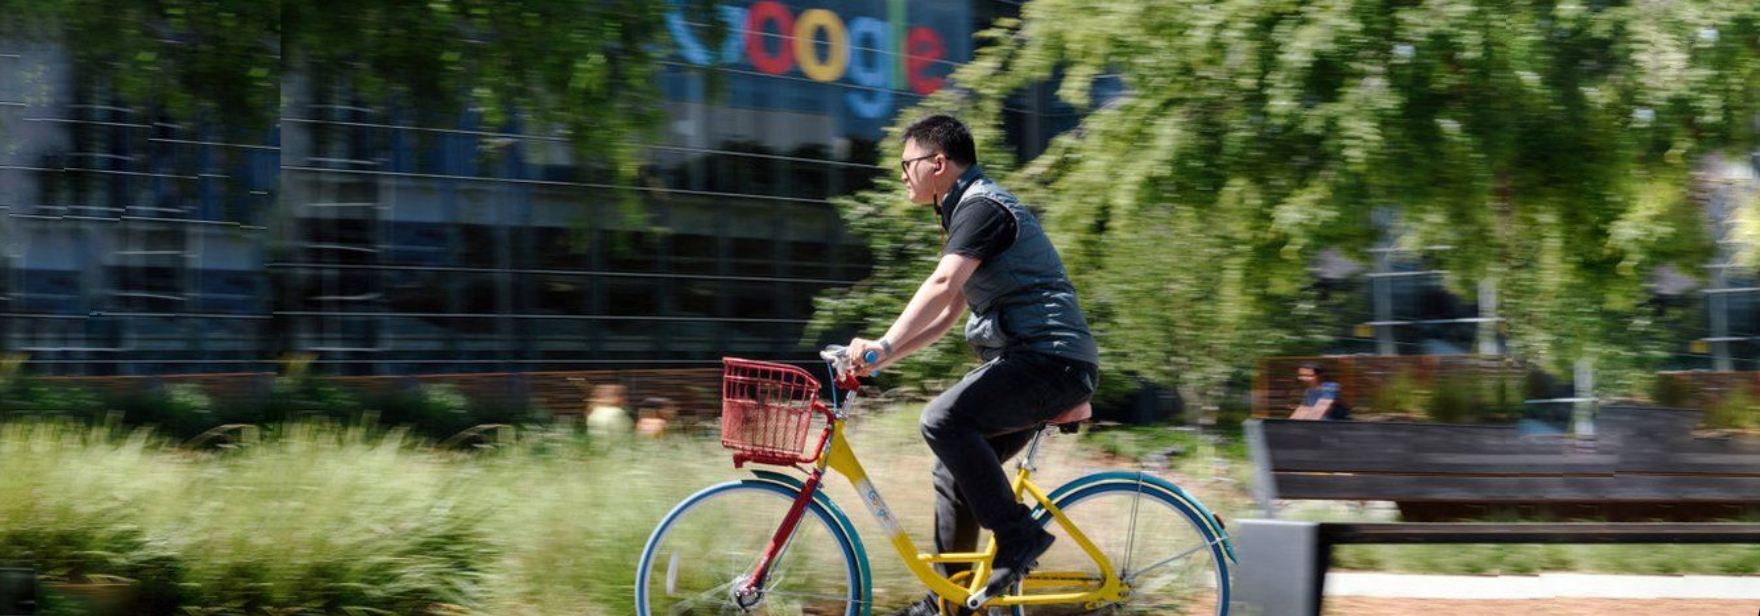 Обложка поста Google хочет сократить зарплату удалённым сотрудникам 